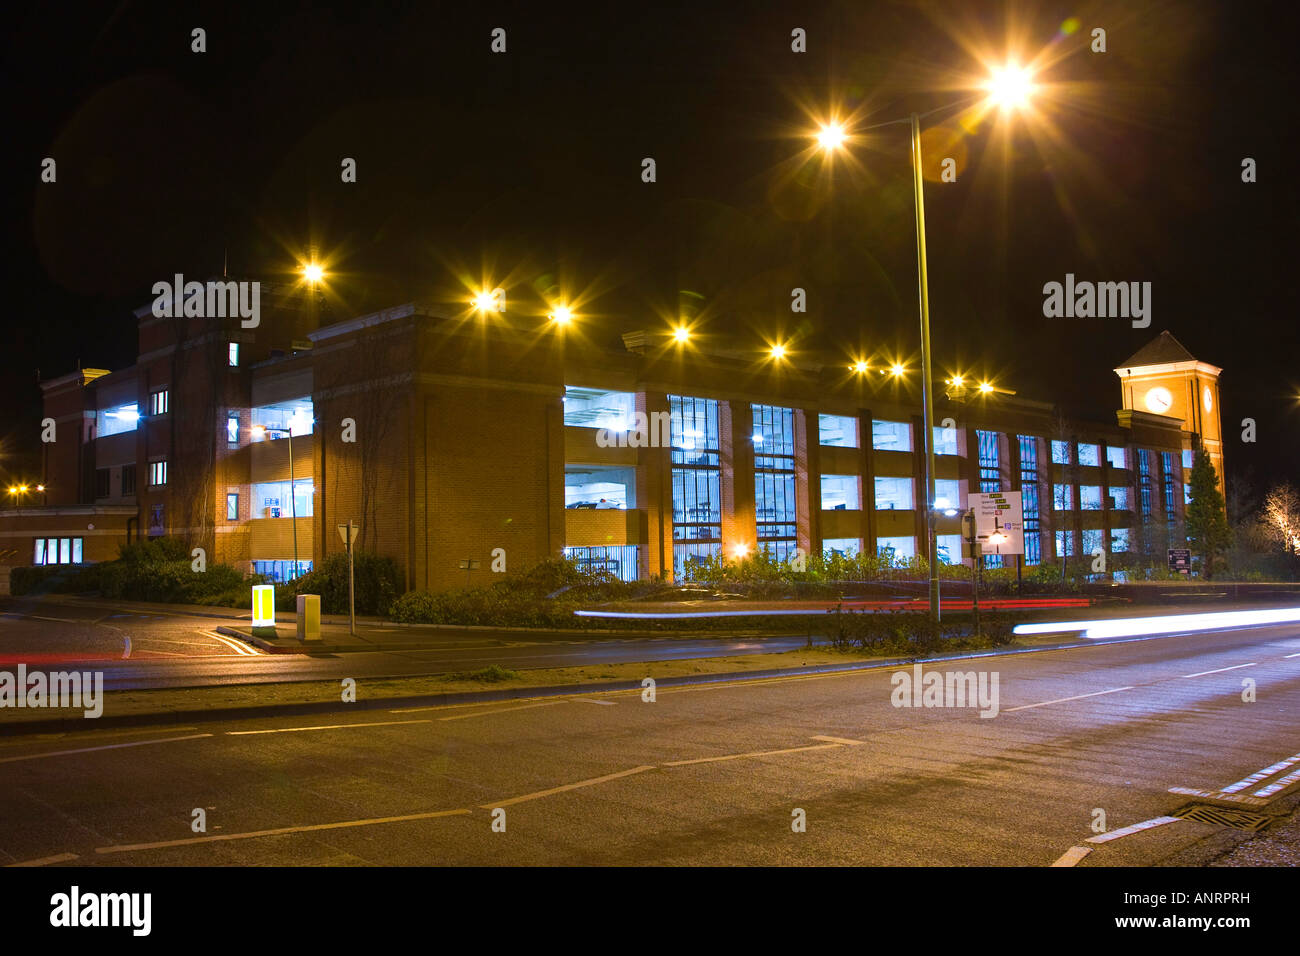 Plusieurs étages de nuit à Bury St Edmunds, Royaume-Uni Banque D'Images